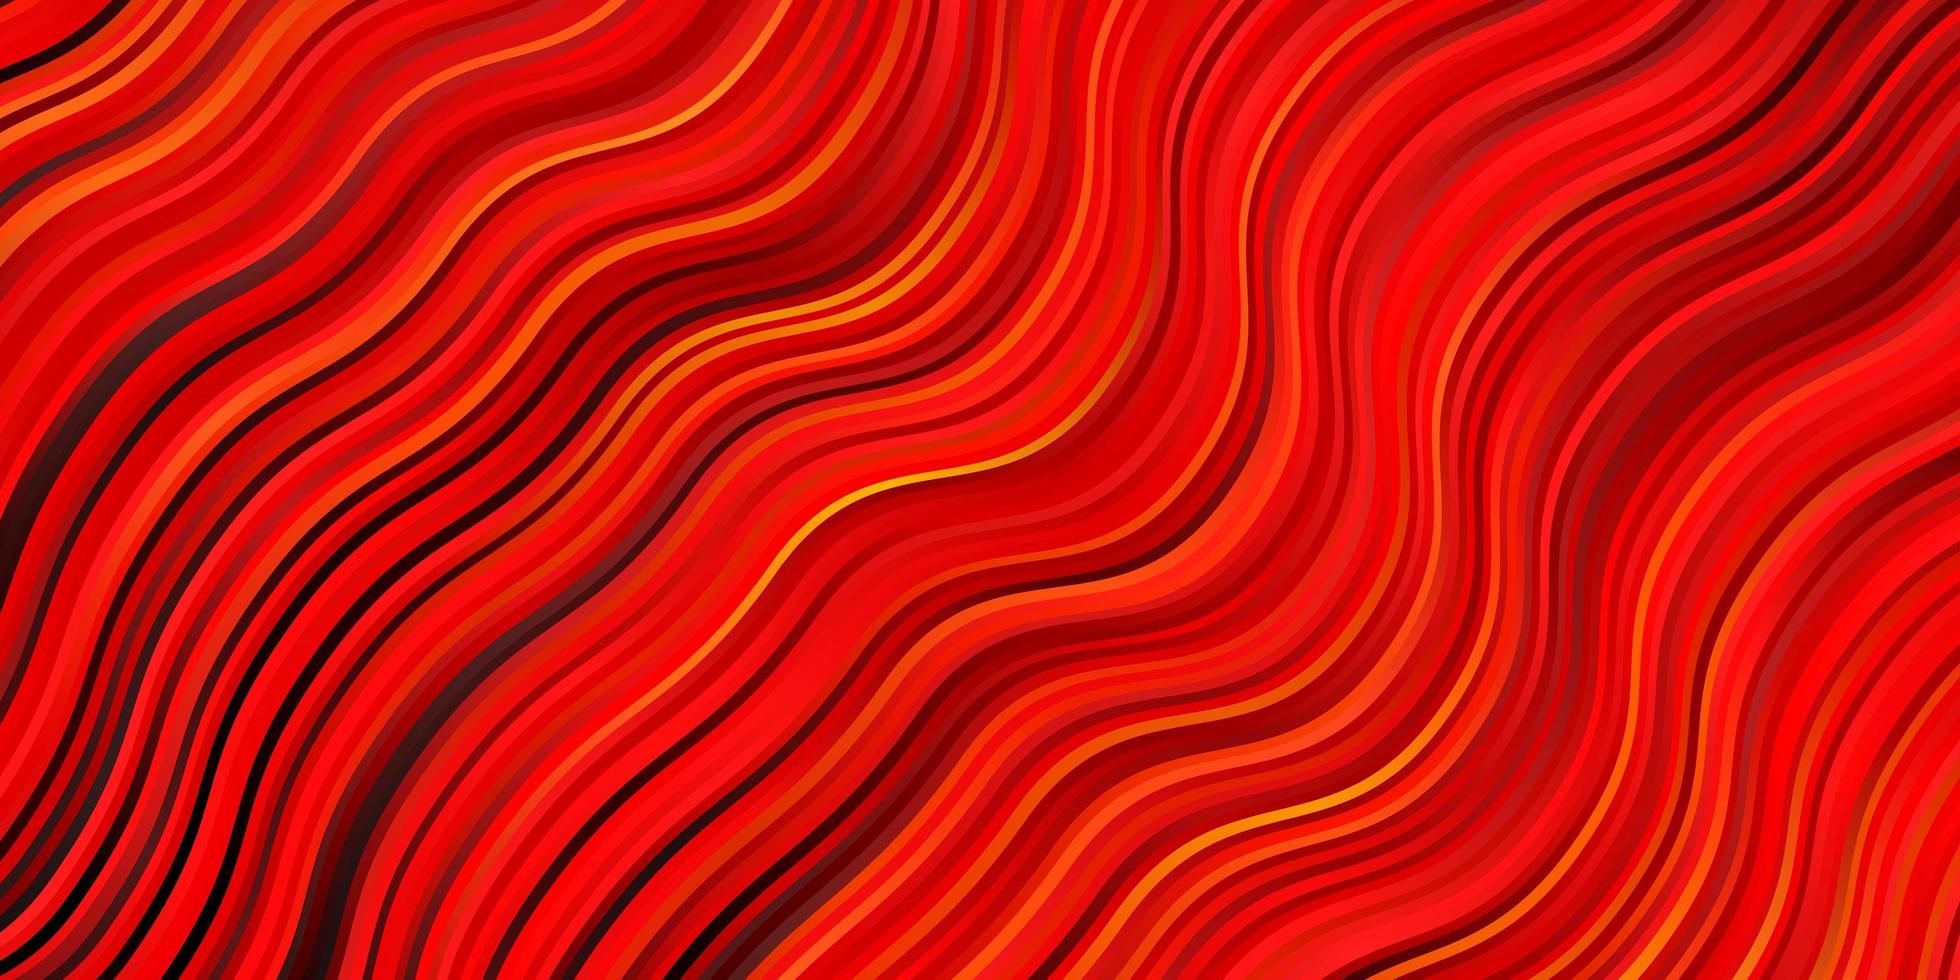 Dark Orange vector texture with wry lines